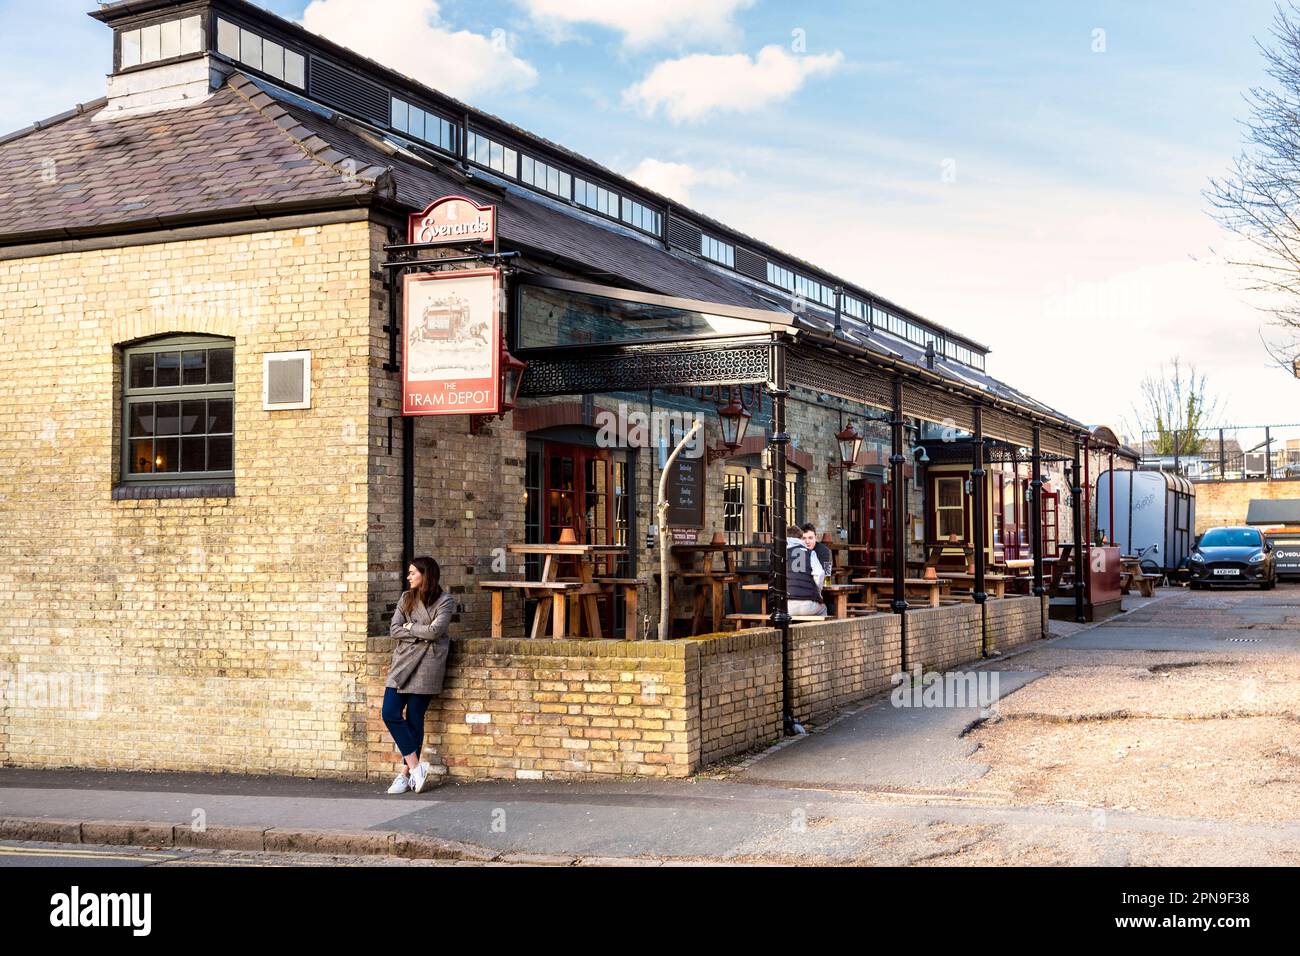 Le Tram Depot pub converti des écuries pour Cambridge Street Tramways, Cambridge, Angleterre, Royaume-Uni Banque D'Images